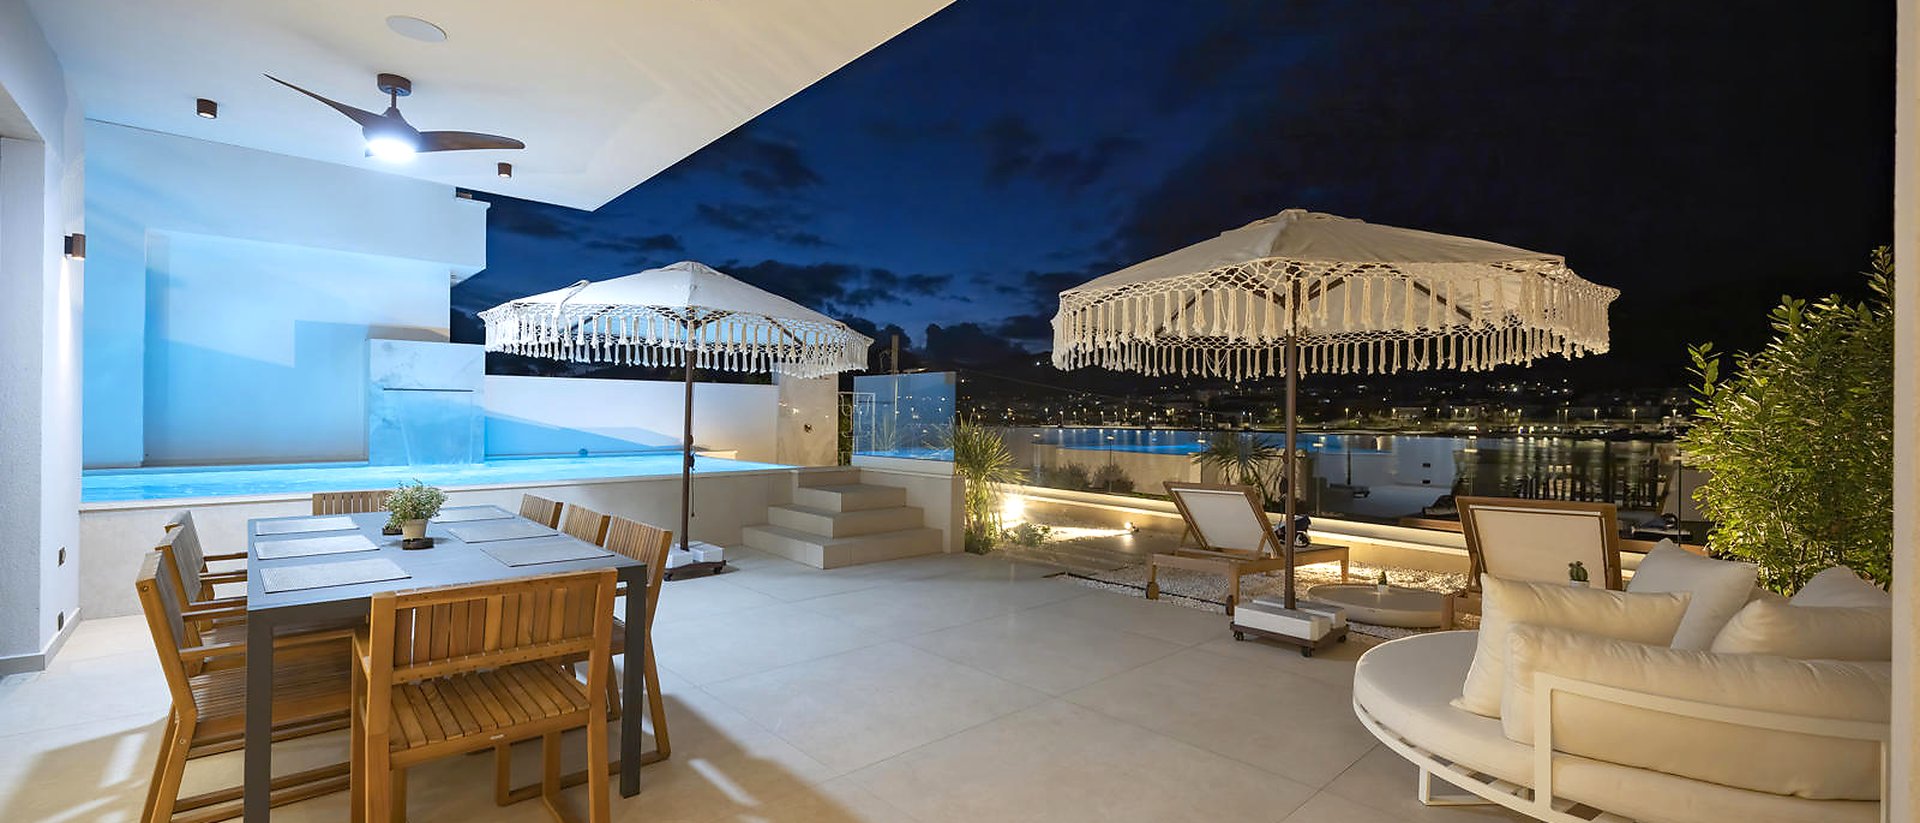 Neue Luxusvilla in erster Reihe am Meer auf der Insel Čiovo! Eine einmalige Gelegenheit!